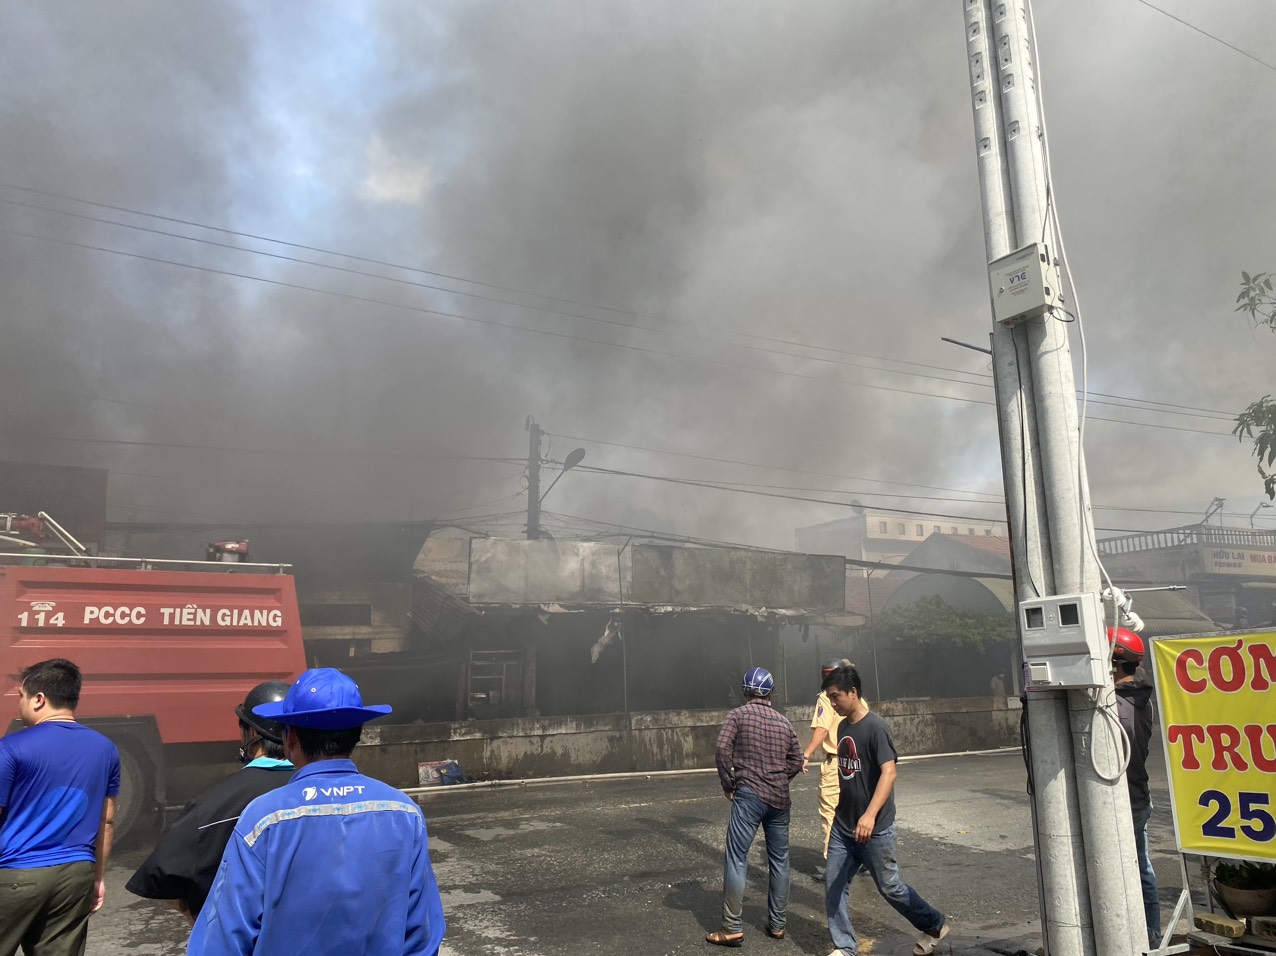 Tiền Giang: Cháy tại một kho chứa hàng của một hộ kinh doanh đồ gia dụng khiến 6 căn nhà bị ảnh hưởng nặng - Ảnh 1.